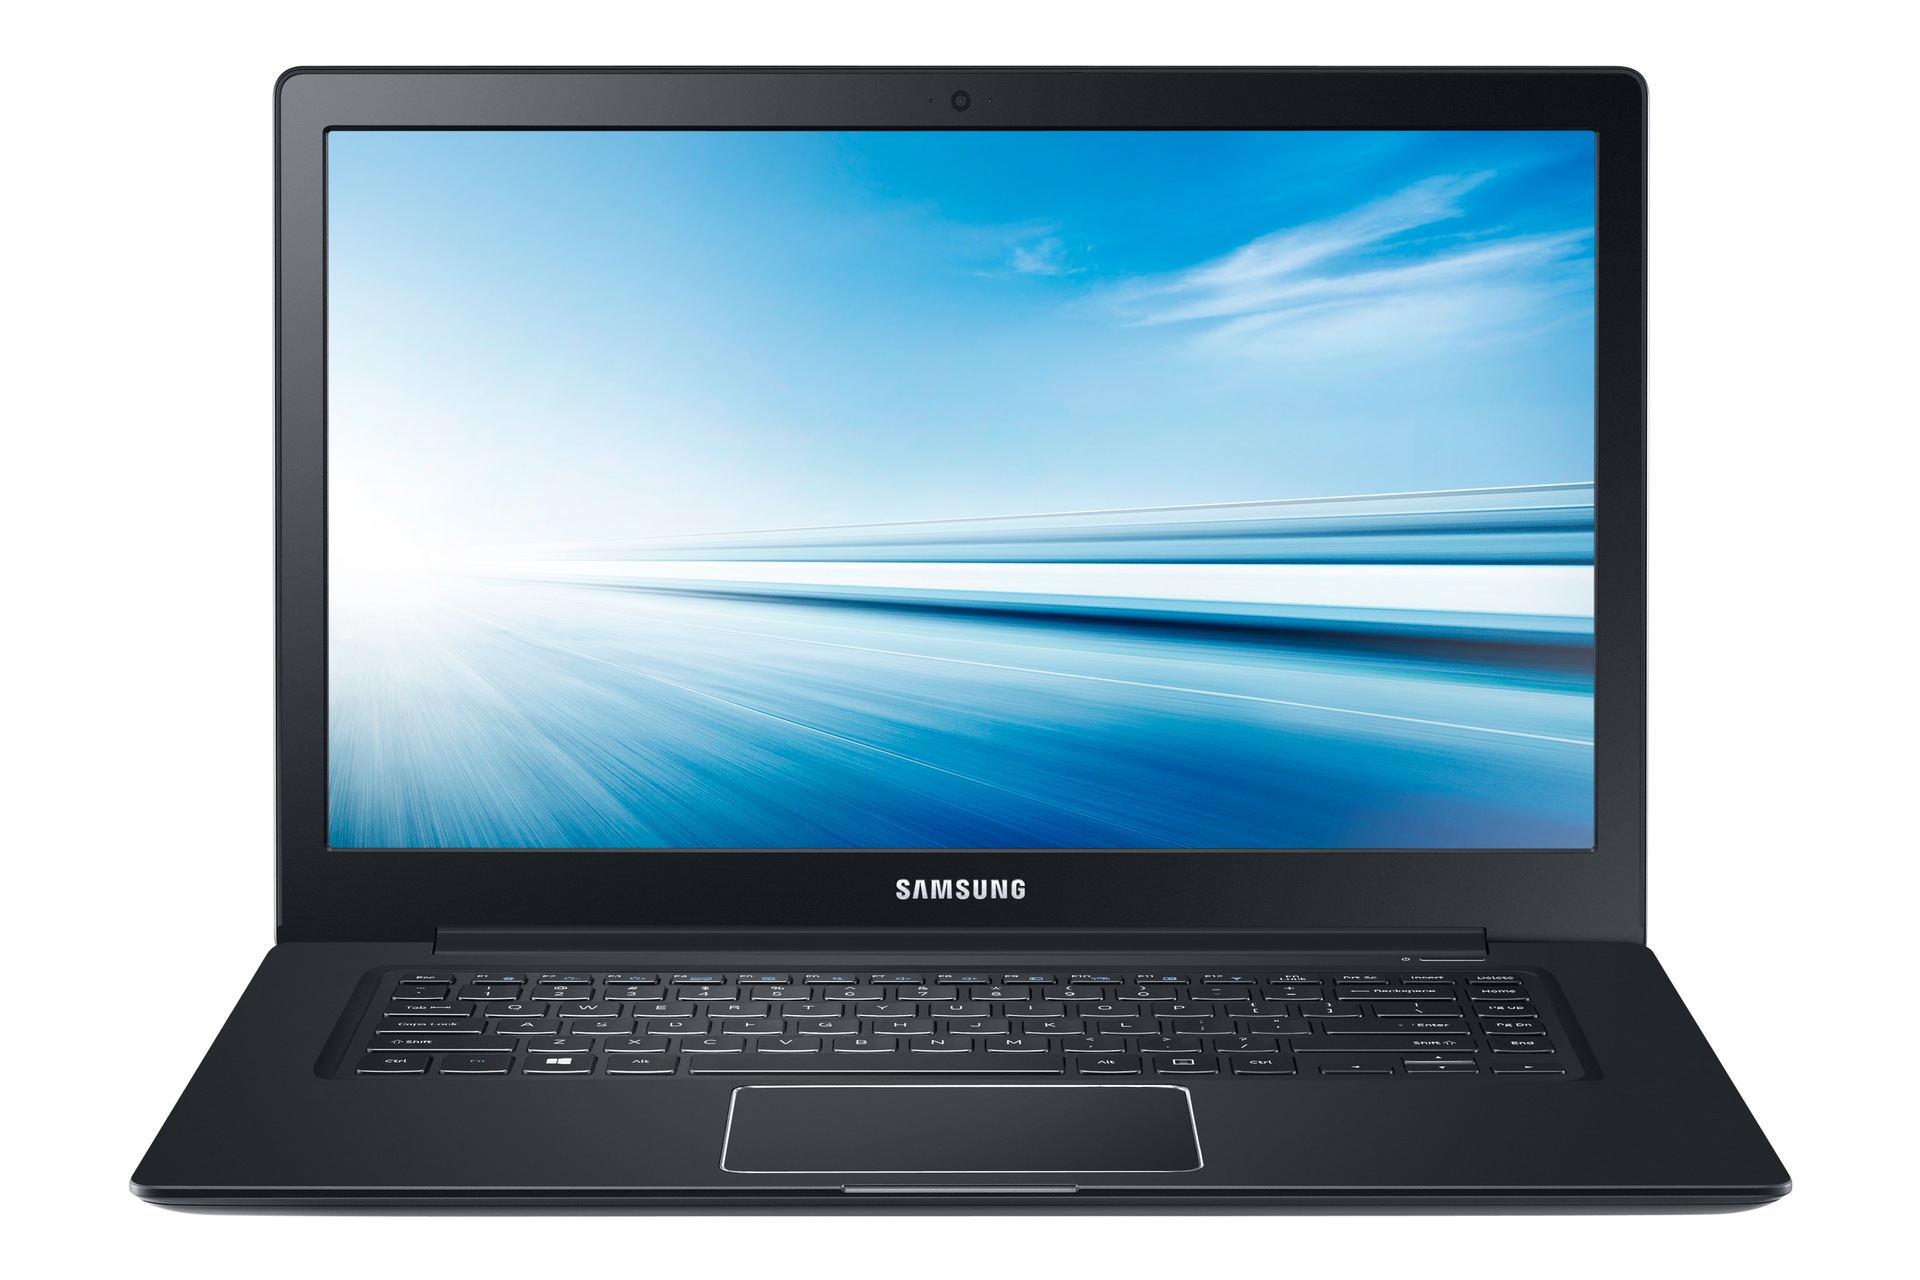 GAOCHENG Laptop PalmRest&Keyboard for Samsung NP910S5J NP915S5J 910S5J 915S5J English US with Touchpad Black